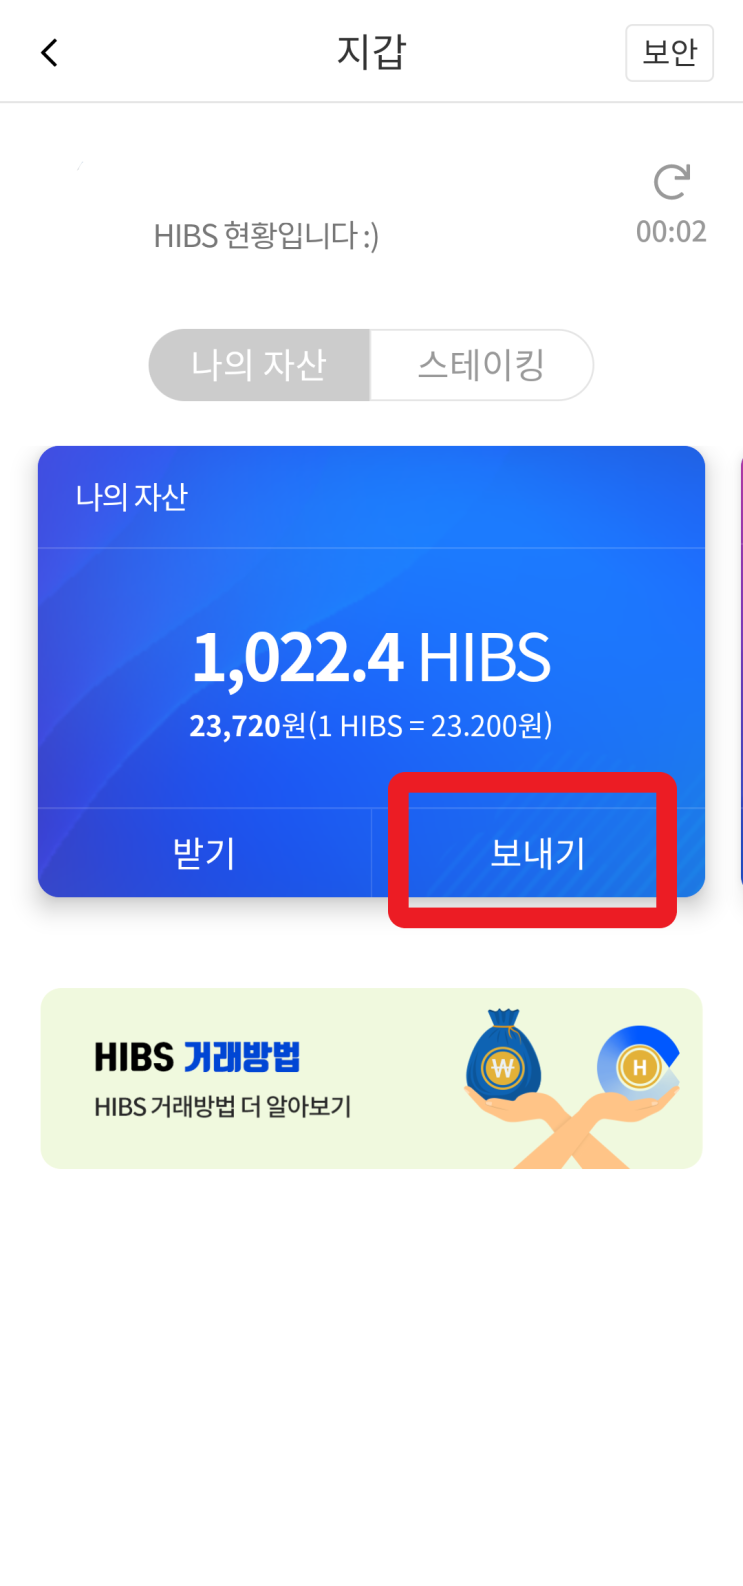 HIBS 빗썸 BTC 마켓 상장^^ 하이블럭스, 하블앱에서 빗썸으로 전송하기